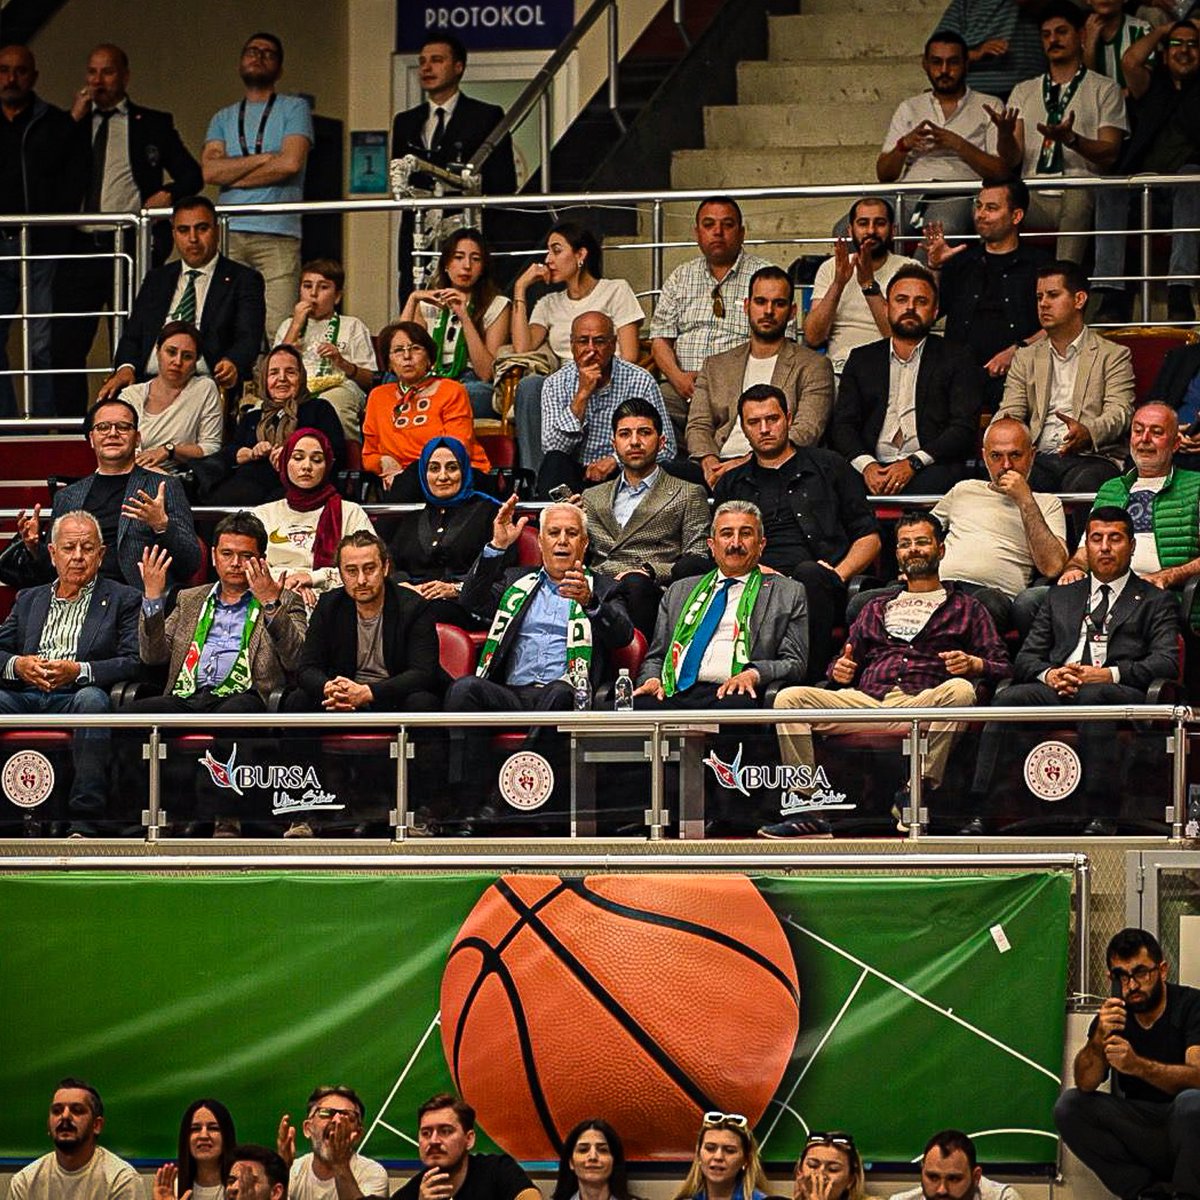 Bursa Büyükşehir Belediye Başkanı Mustafa Bozbey, basketbolda da Bursaspor'u yalnız bırakmadı! Bozbey, bütün biletleri satın alıp, taraftarın Manisa maçına ücretsiz girmesini sağlamıştı... #Bursa #Bursaspor